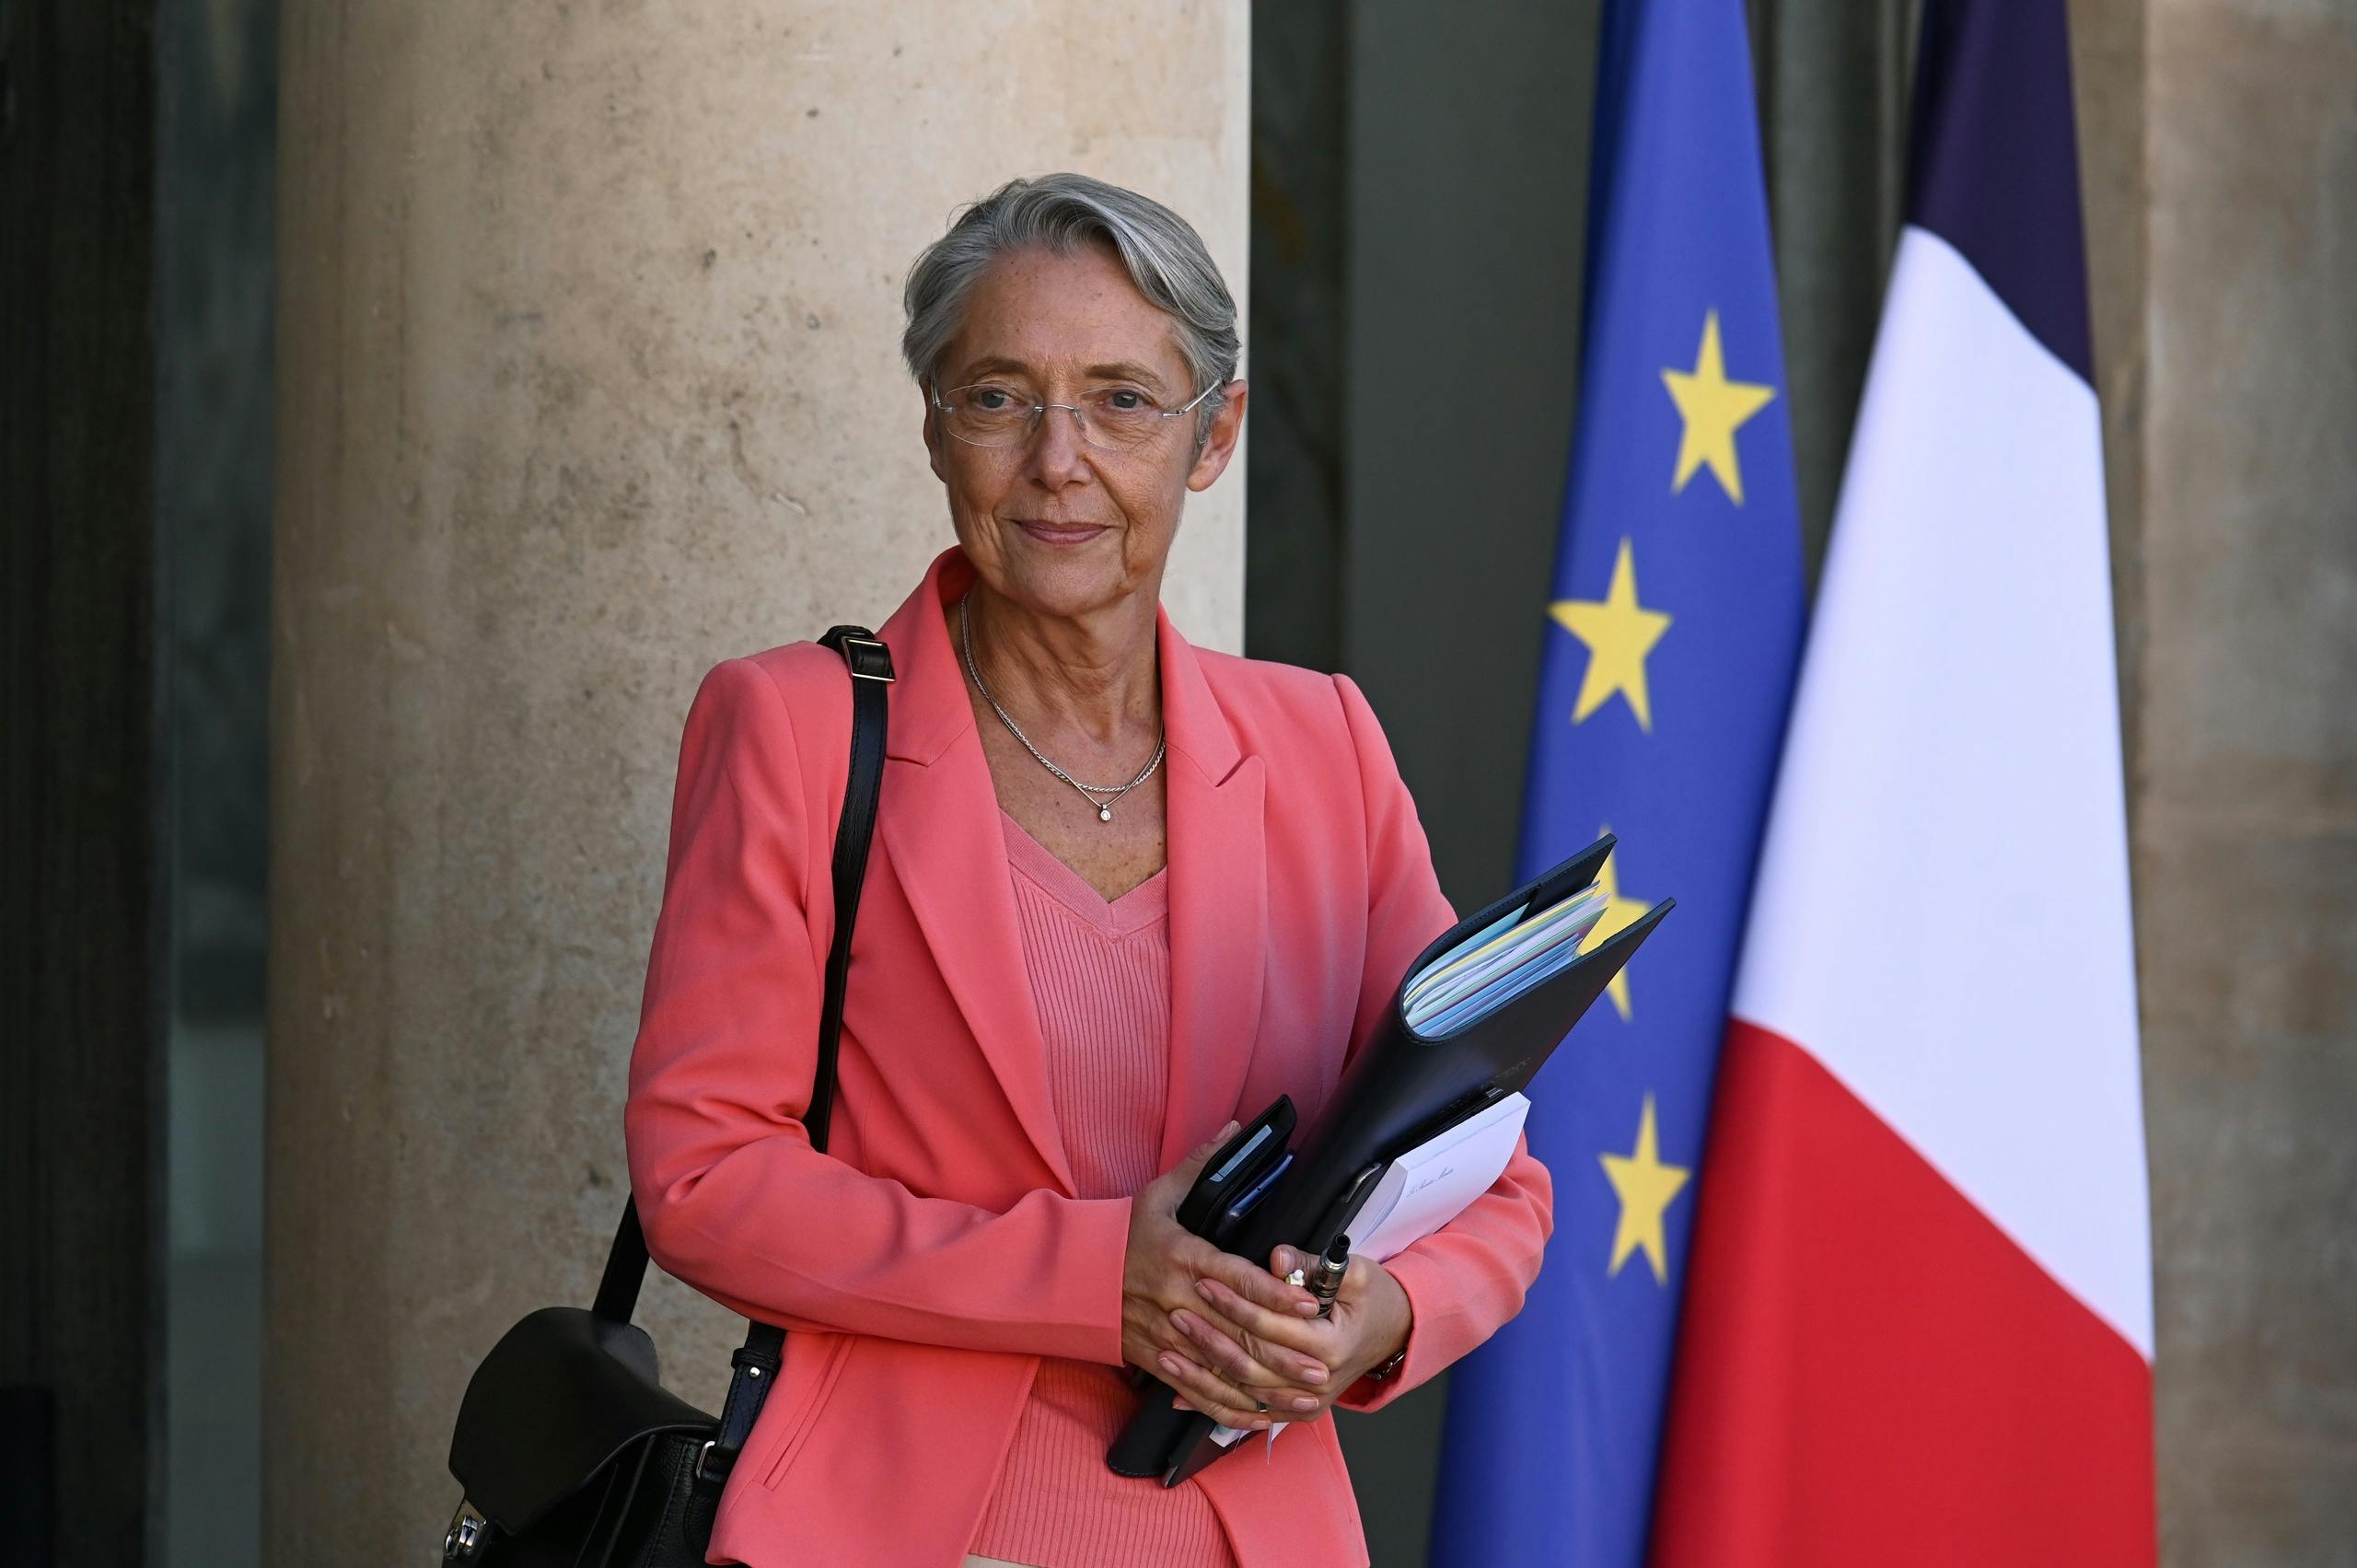 Le Premier ministre français présente les plans du gouvernement minoritaire